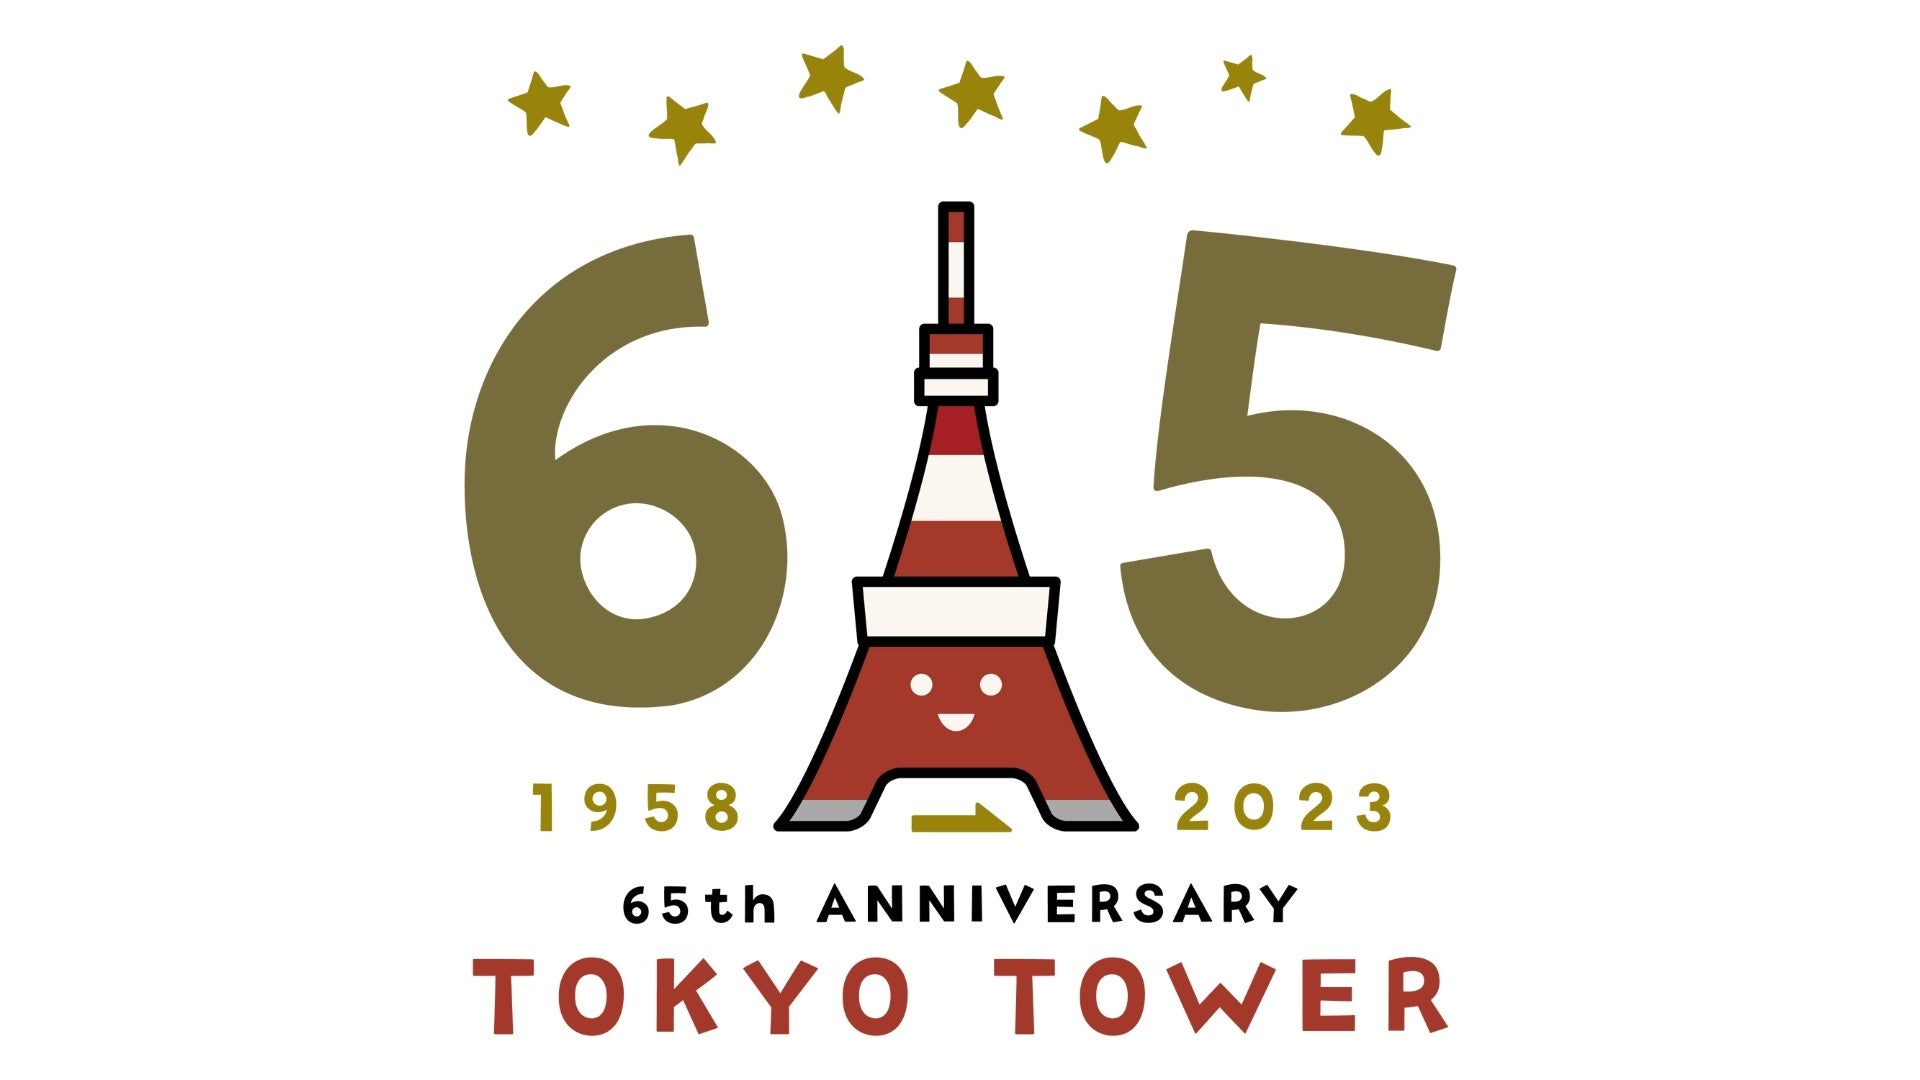 【販売開始】TOKYO TOWER 65th ANNIVERSARY！東京タワー開業65周年記念NFT企画をLINE NEXT社が提供する「DOSI」にて販売開始！